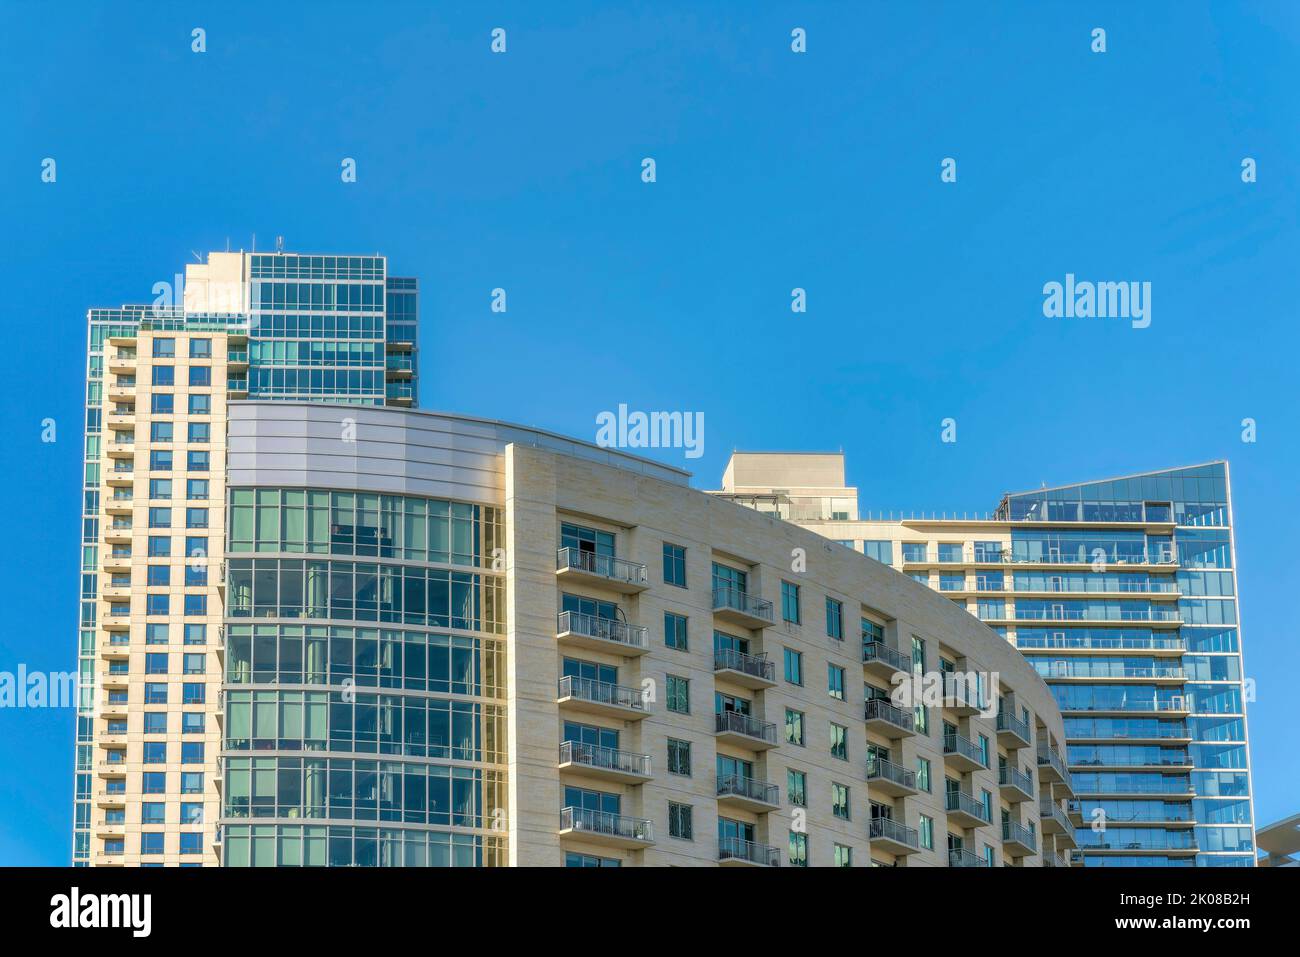 Luxus-Apartments mit Glasfassade vor blauem Himmel Hintergrund an einem sonnigen Tag. Skyline von Austin Texas mit Blick von außen auf moderne Wohngebäude Stockfoto